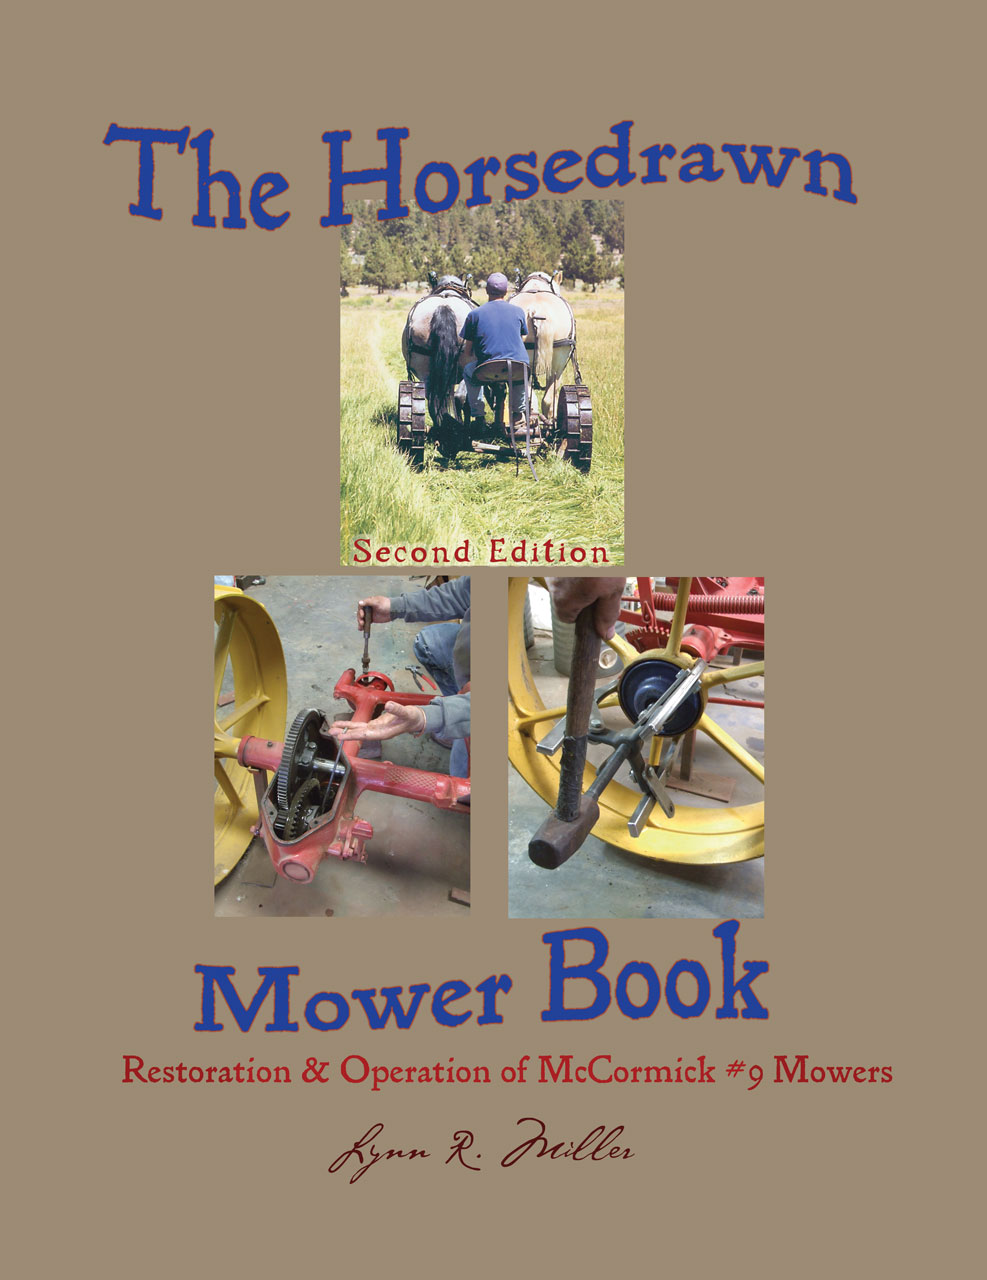 The Horsedrawn Mower Book